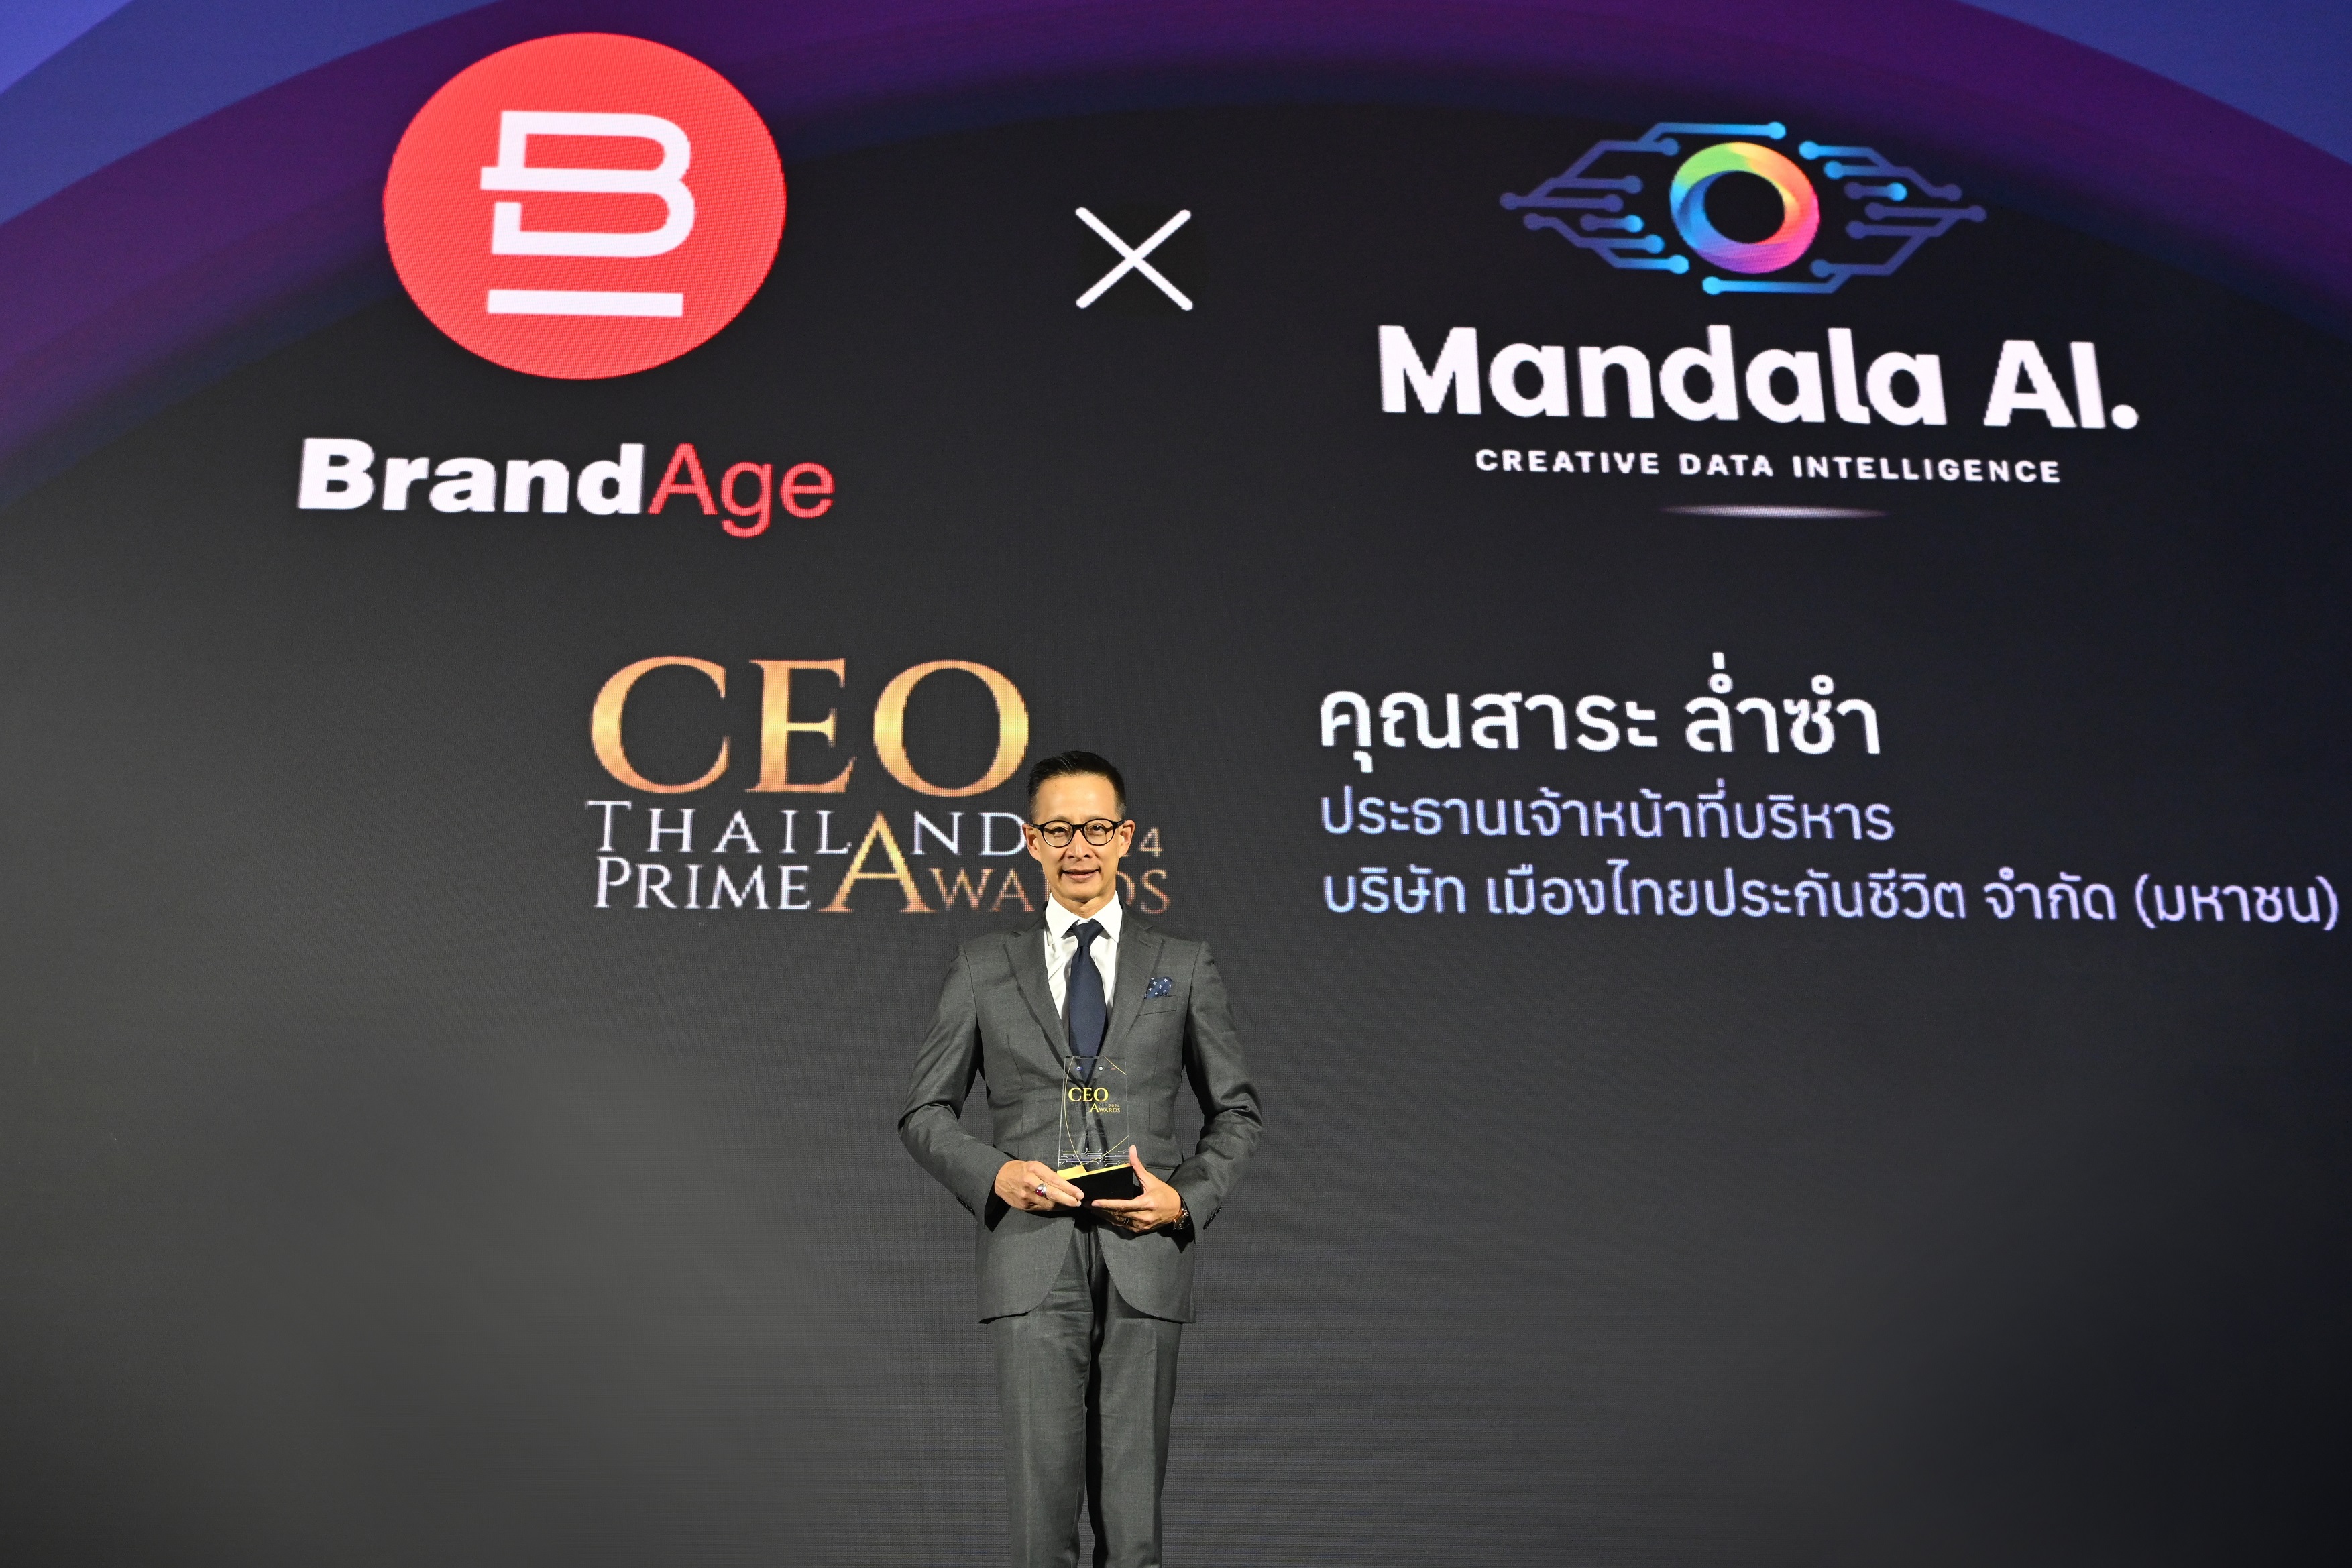 'สาระ ล่ำซำ'รับรางวัล CEO Thailand Prime Awards เป็นคนแรกของการจัดมอบรางวัล